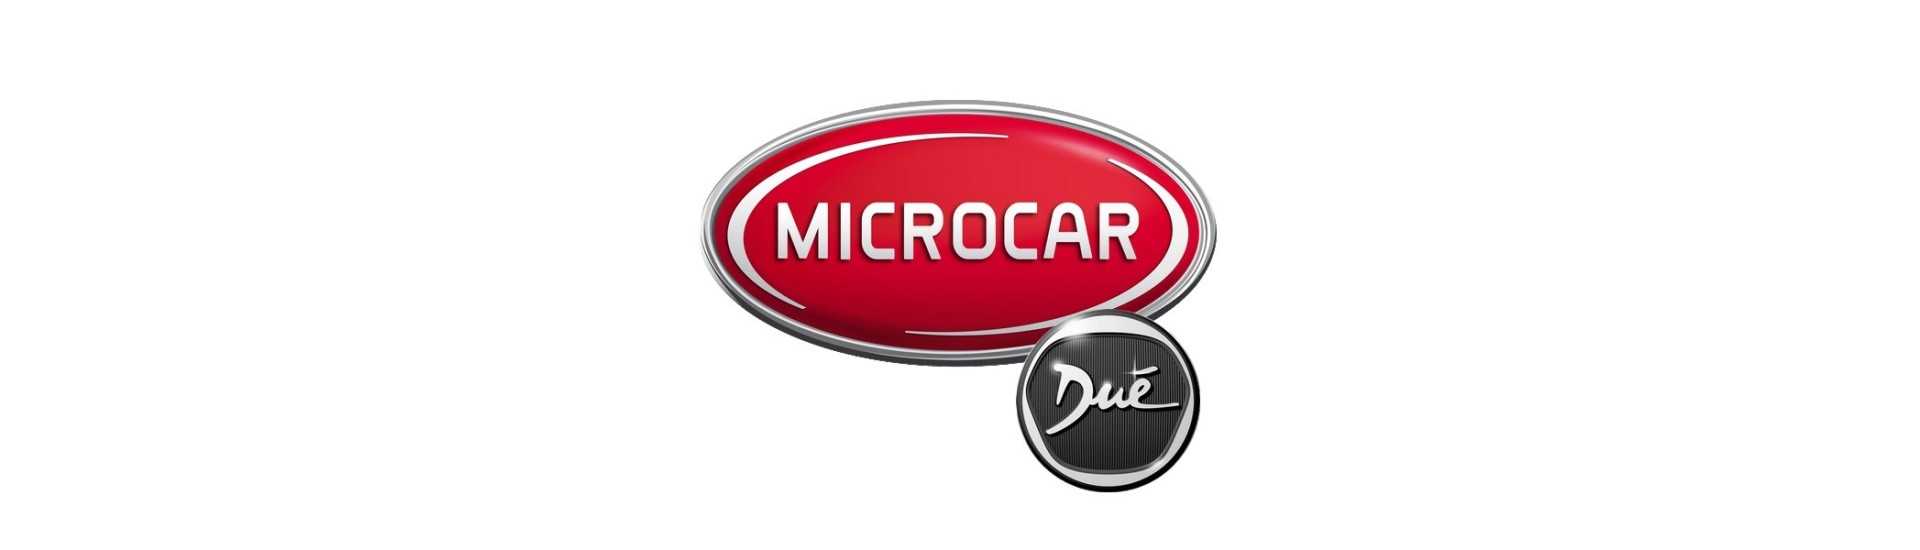 Support métal au meilleur prix pour voiture sans permis Microcar Dué